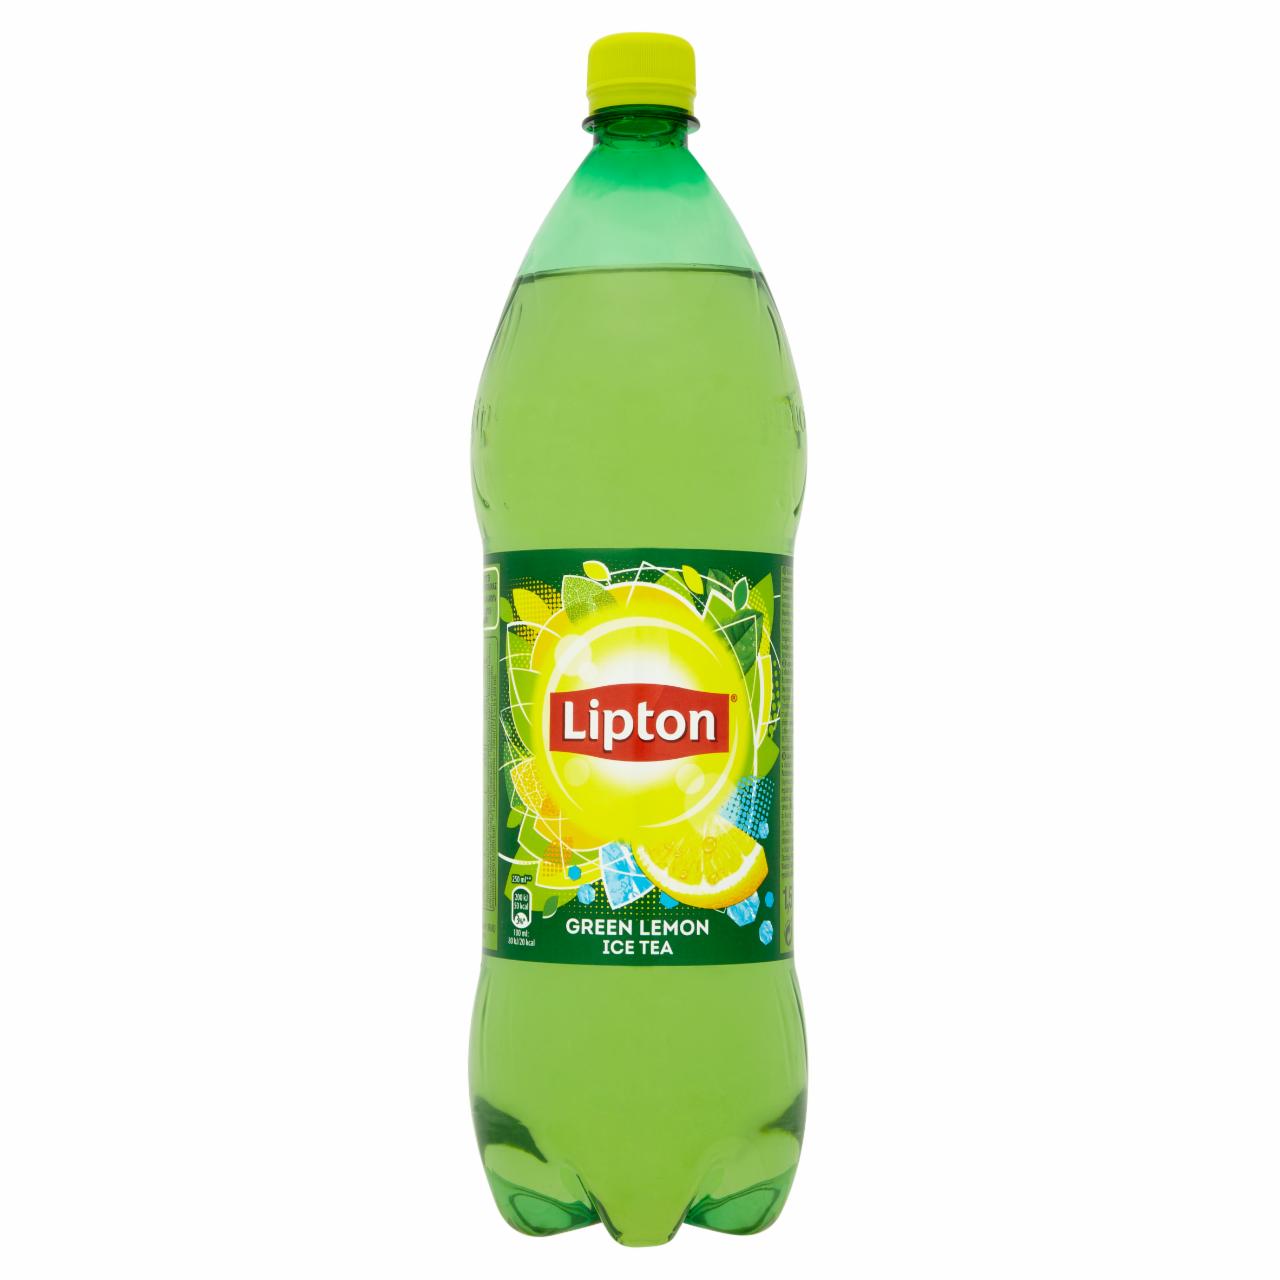 Képek - Lipton Green Lemon Ice Tea csökkentett energiatartalmú citrom ízű szénsavmentes üdítőital 1,5 l